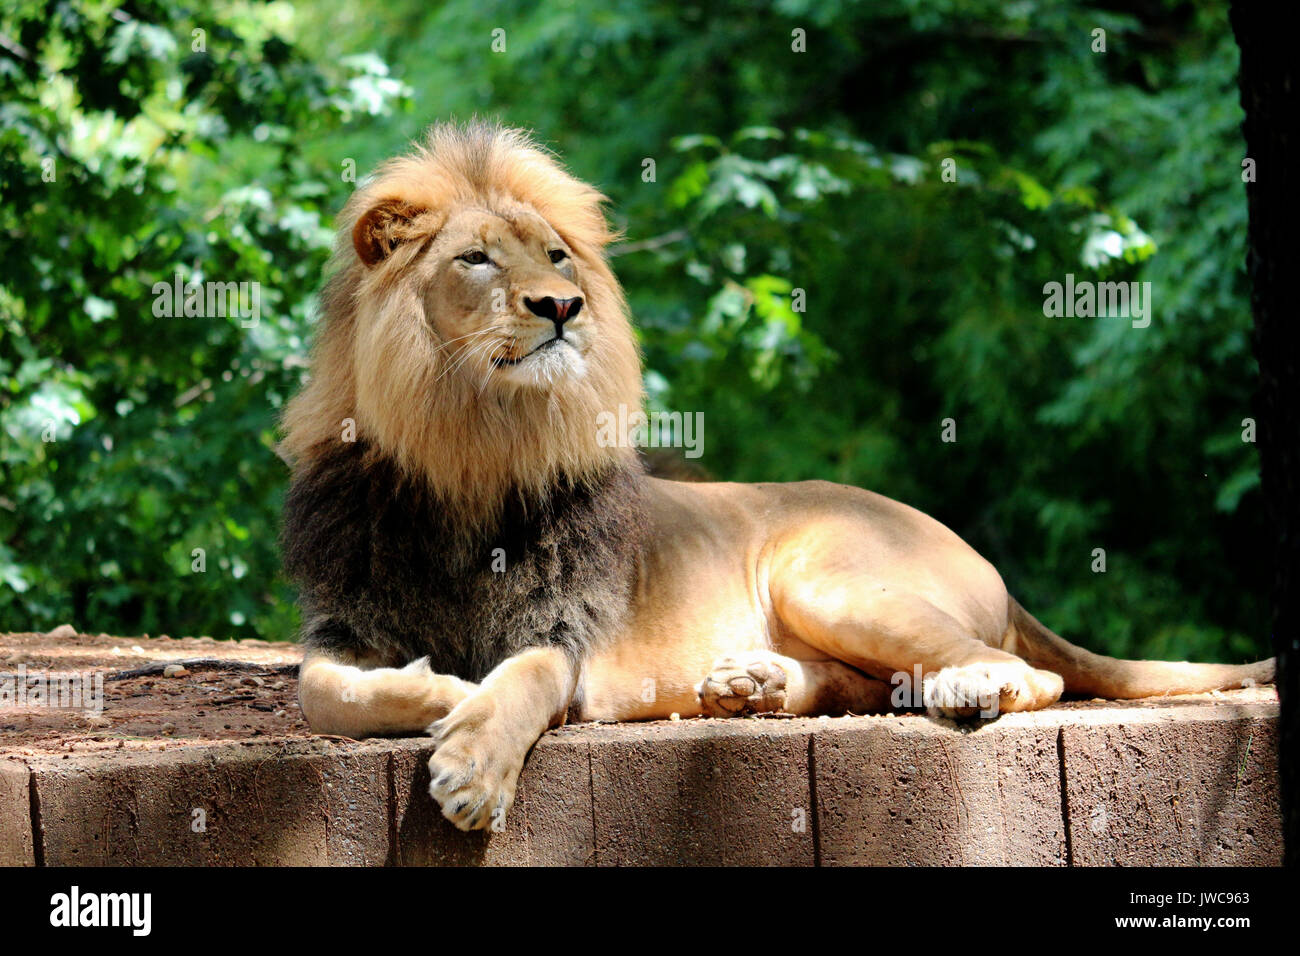 Un lion se détendre dans son habitat avec un fond vert. Banque D'Images